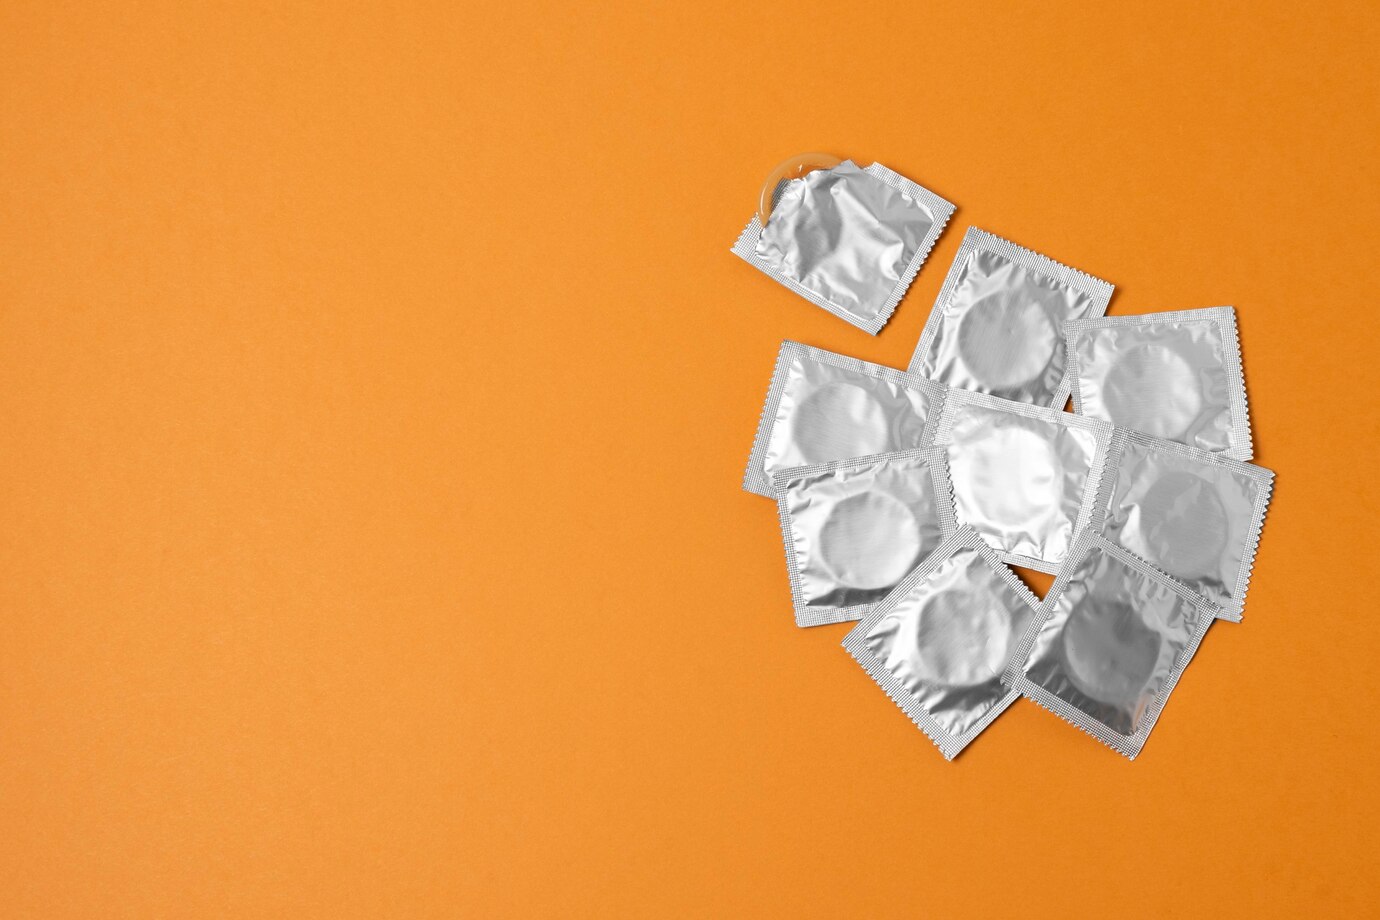 balení kondomů